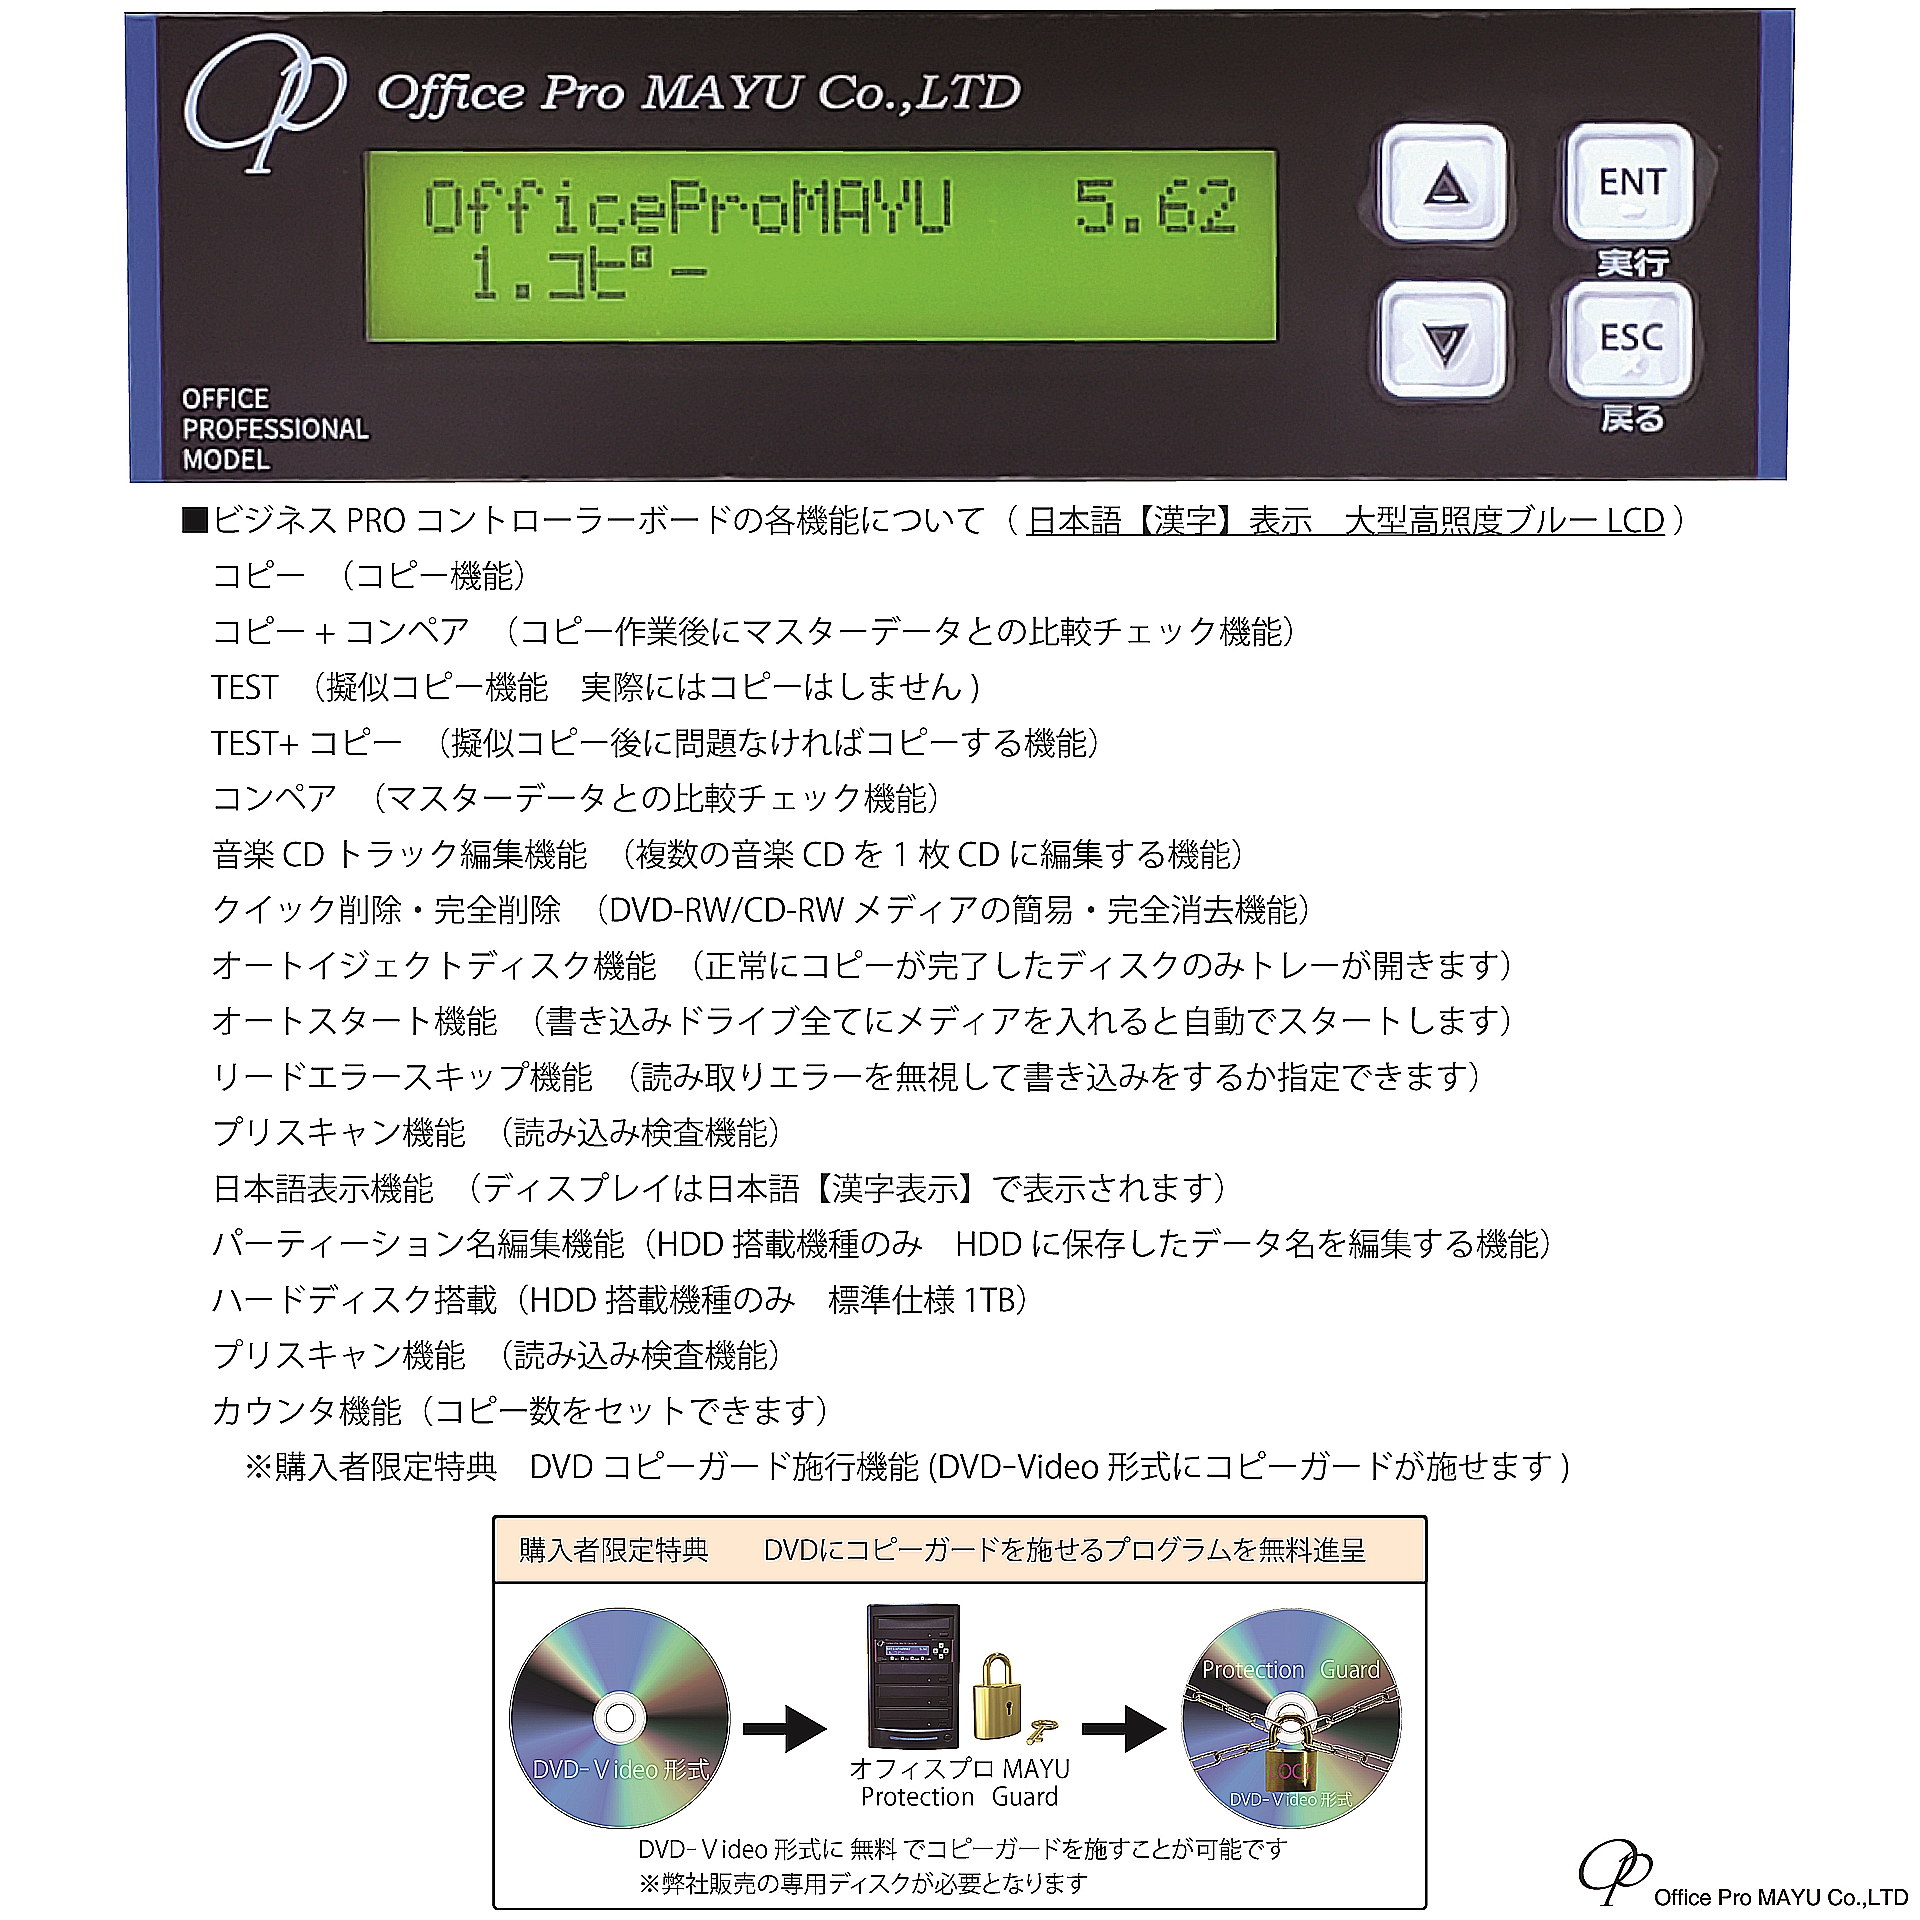  low end модель DVD дупликатор 1:3 LG электронный установка 